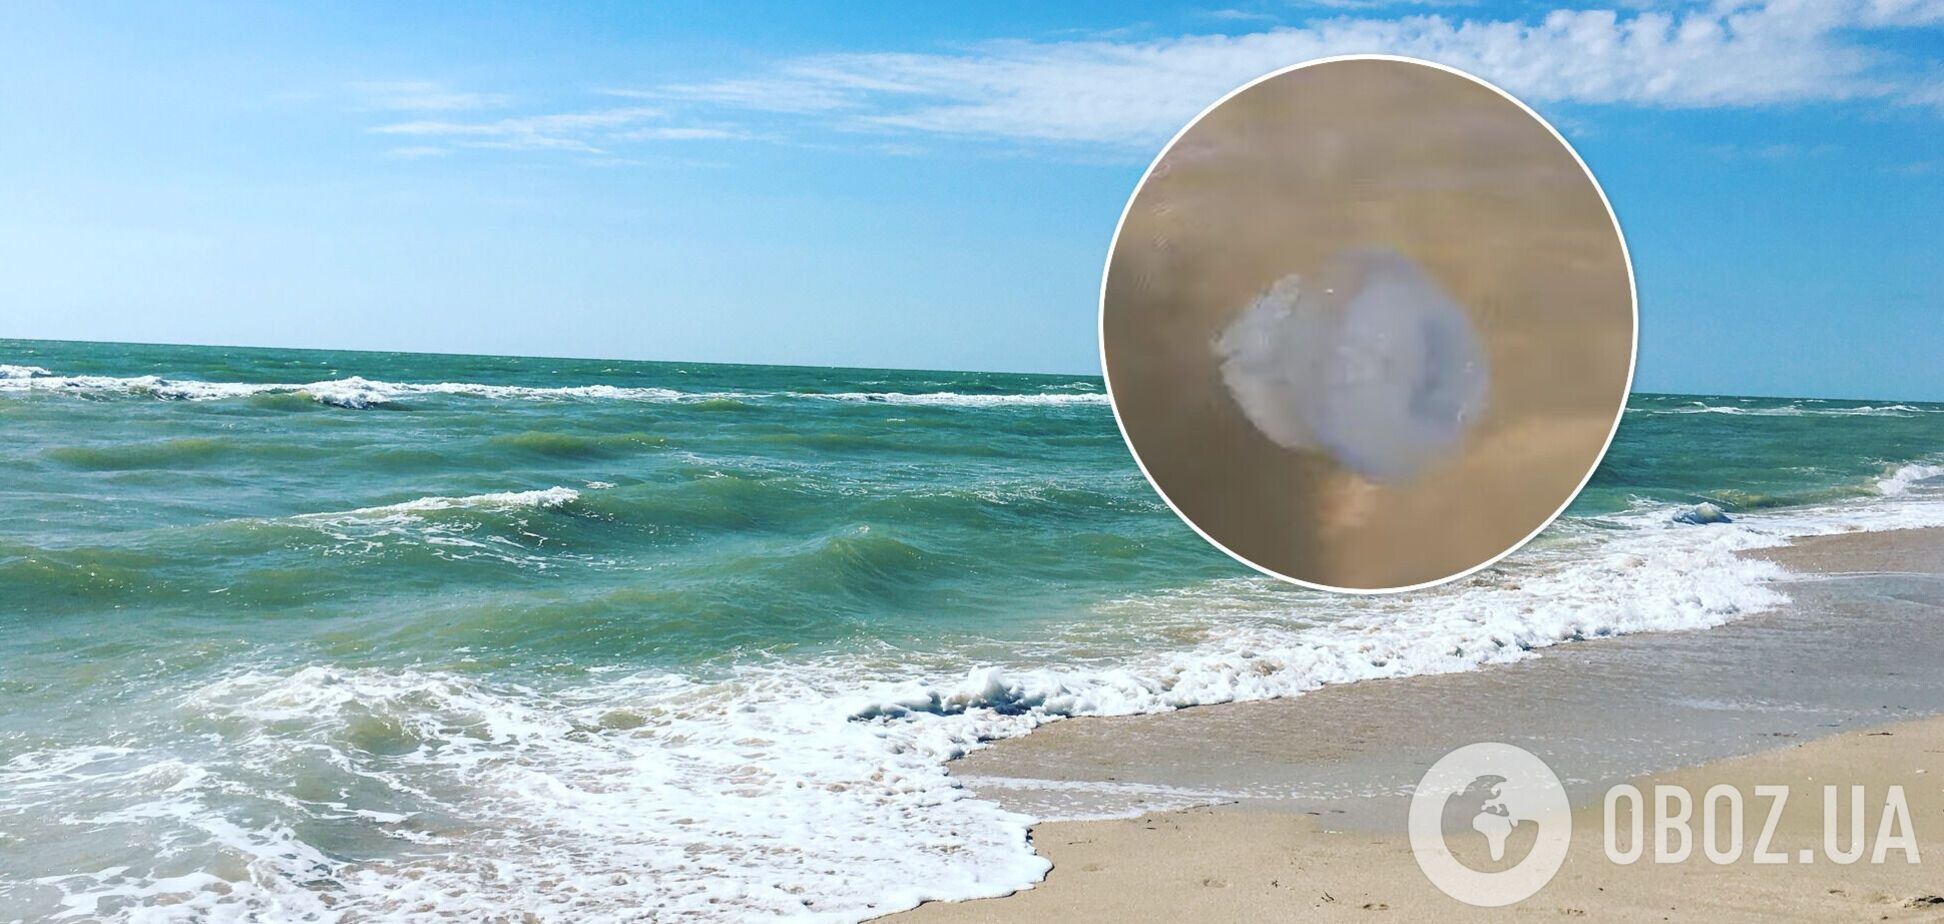 Бар'єрні сітки рятують від медуз, але щастить не всім: турист показав сумні реалії Кирилівки. Відео